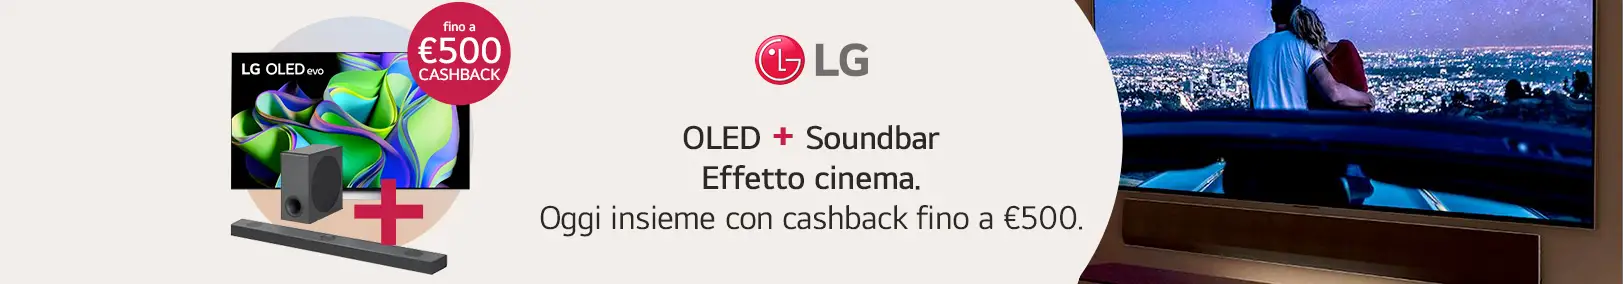 LG - Cashback Fino a 500€ se acquisti Oled più Soundbar